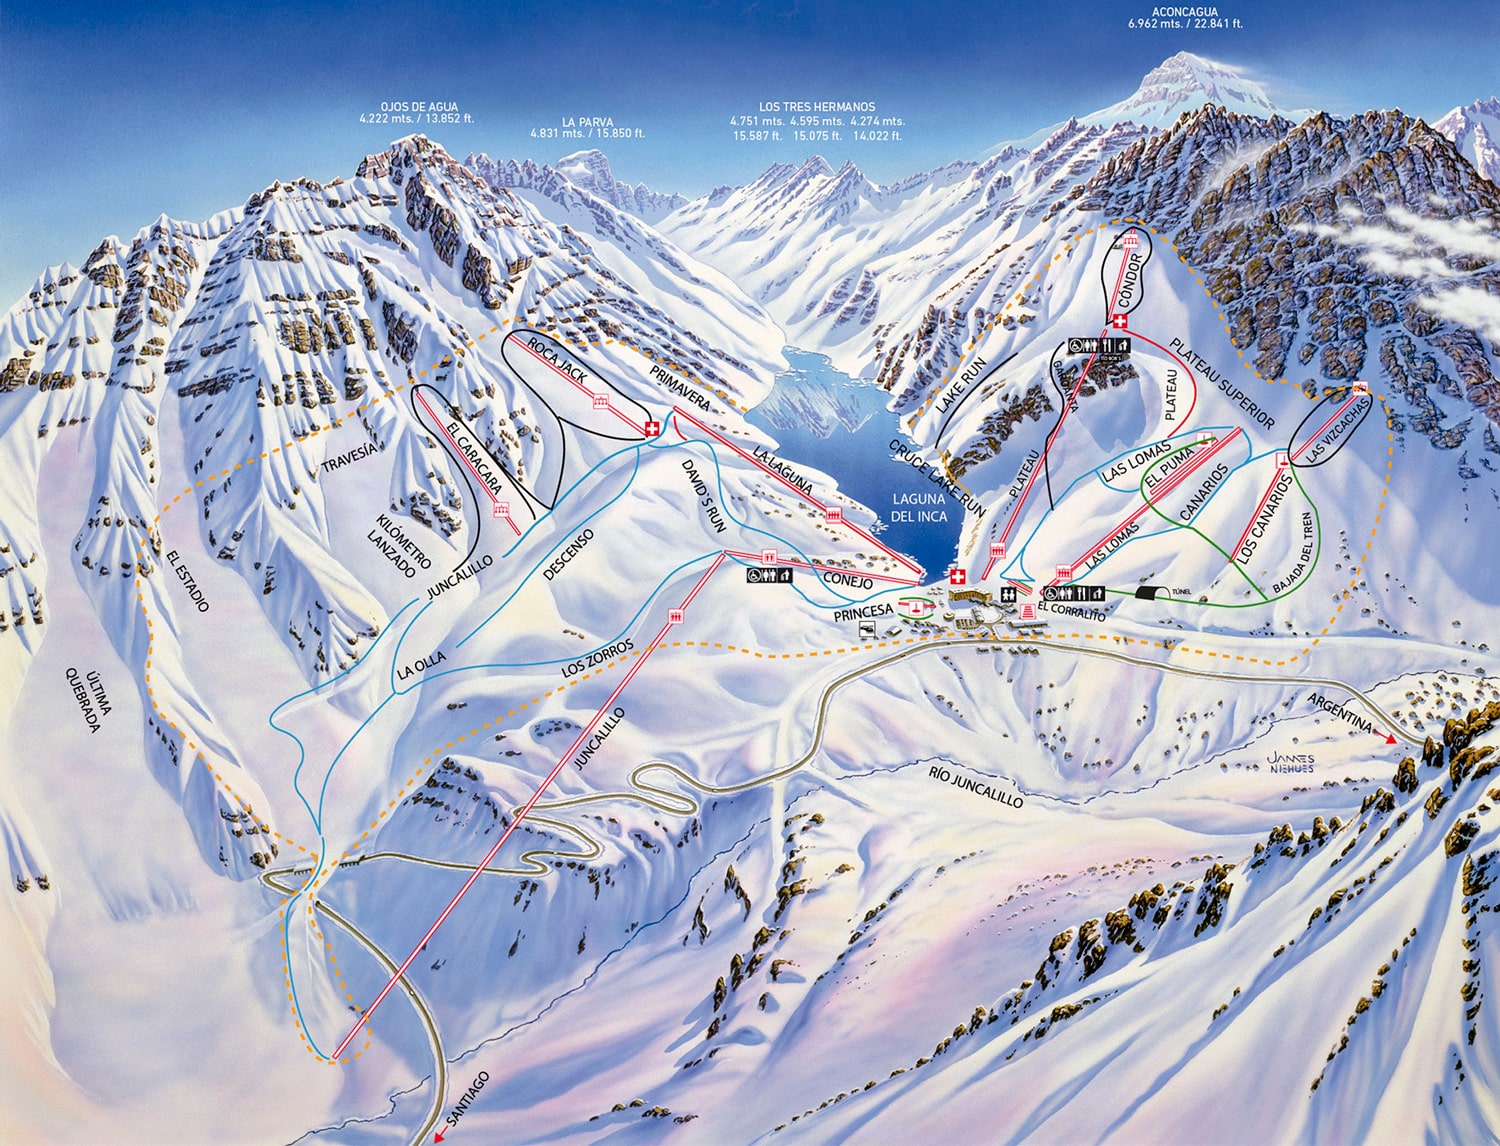 Ski Portillo piste map. 